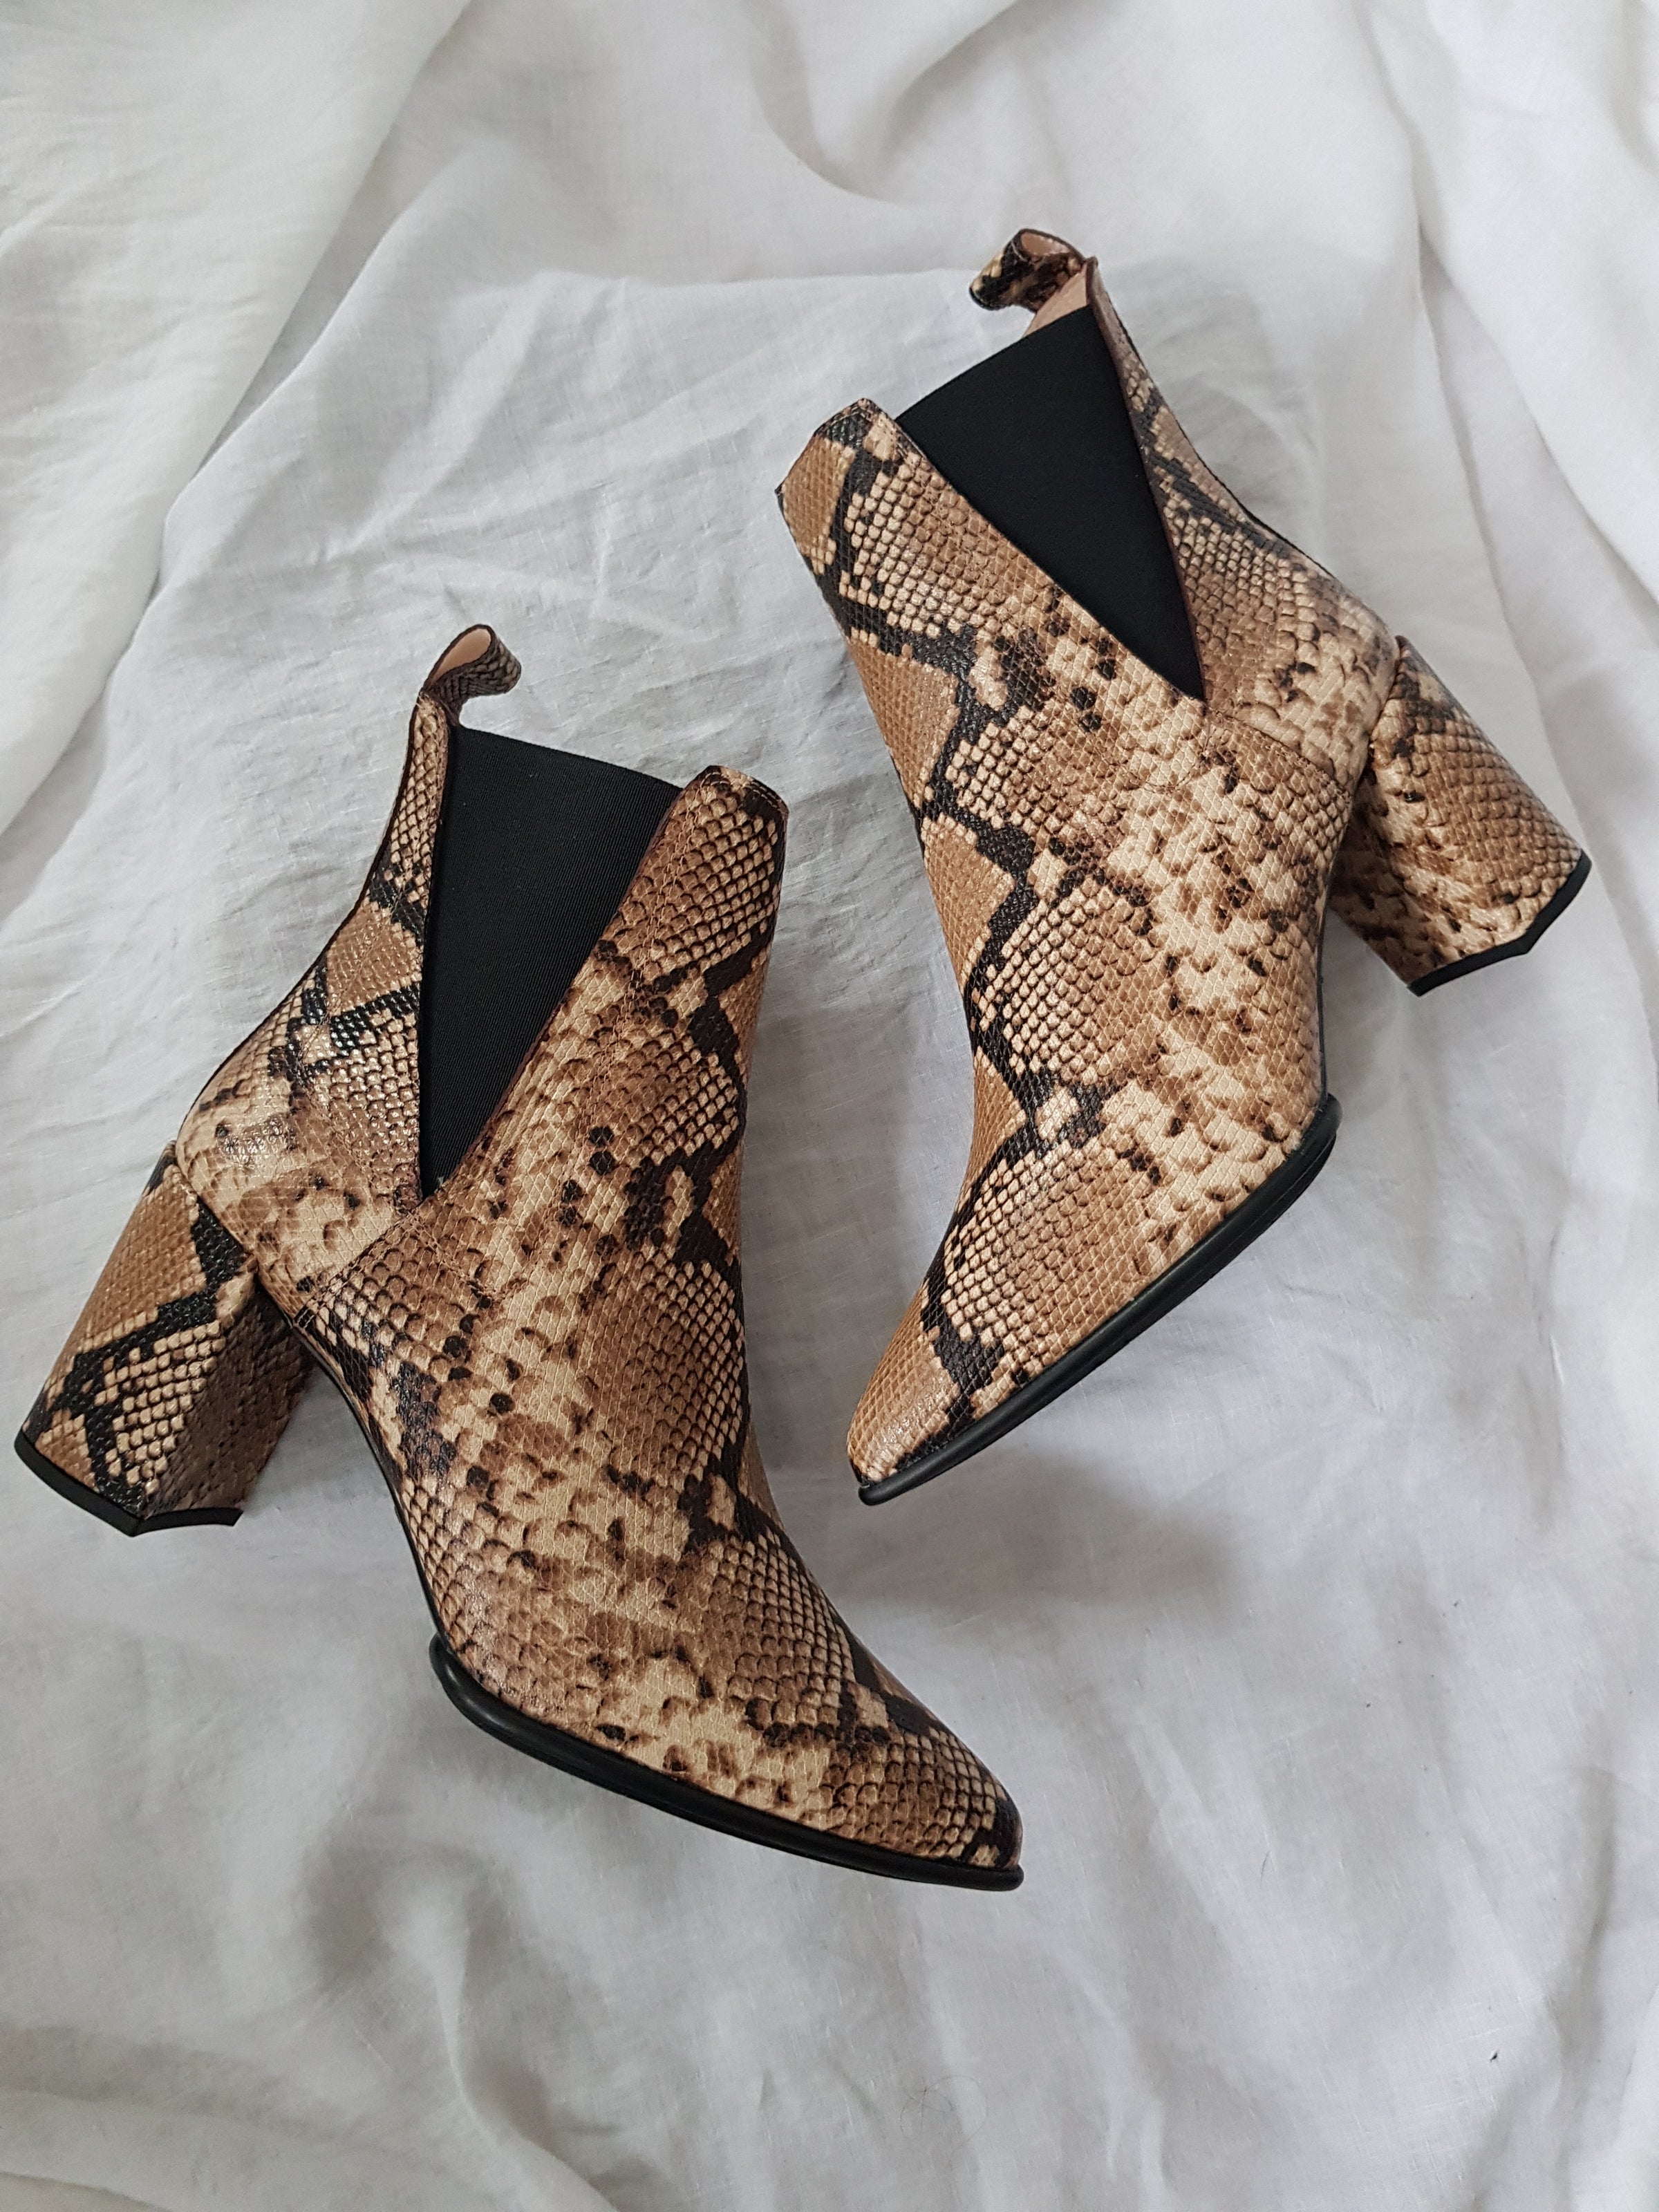 Unisa kilman viper leather pull on heeled ankle boot online at hunterminx